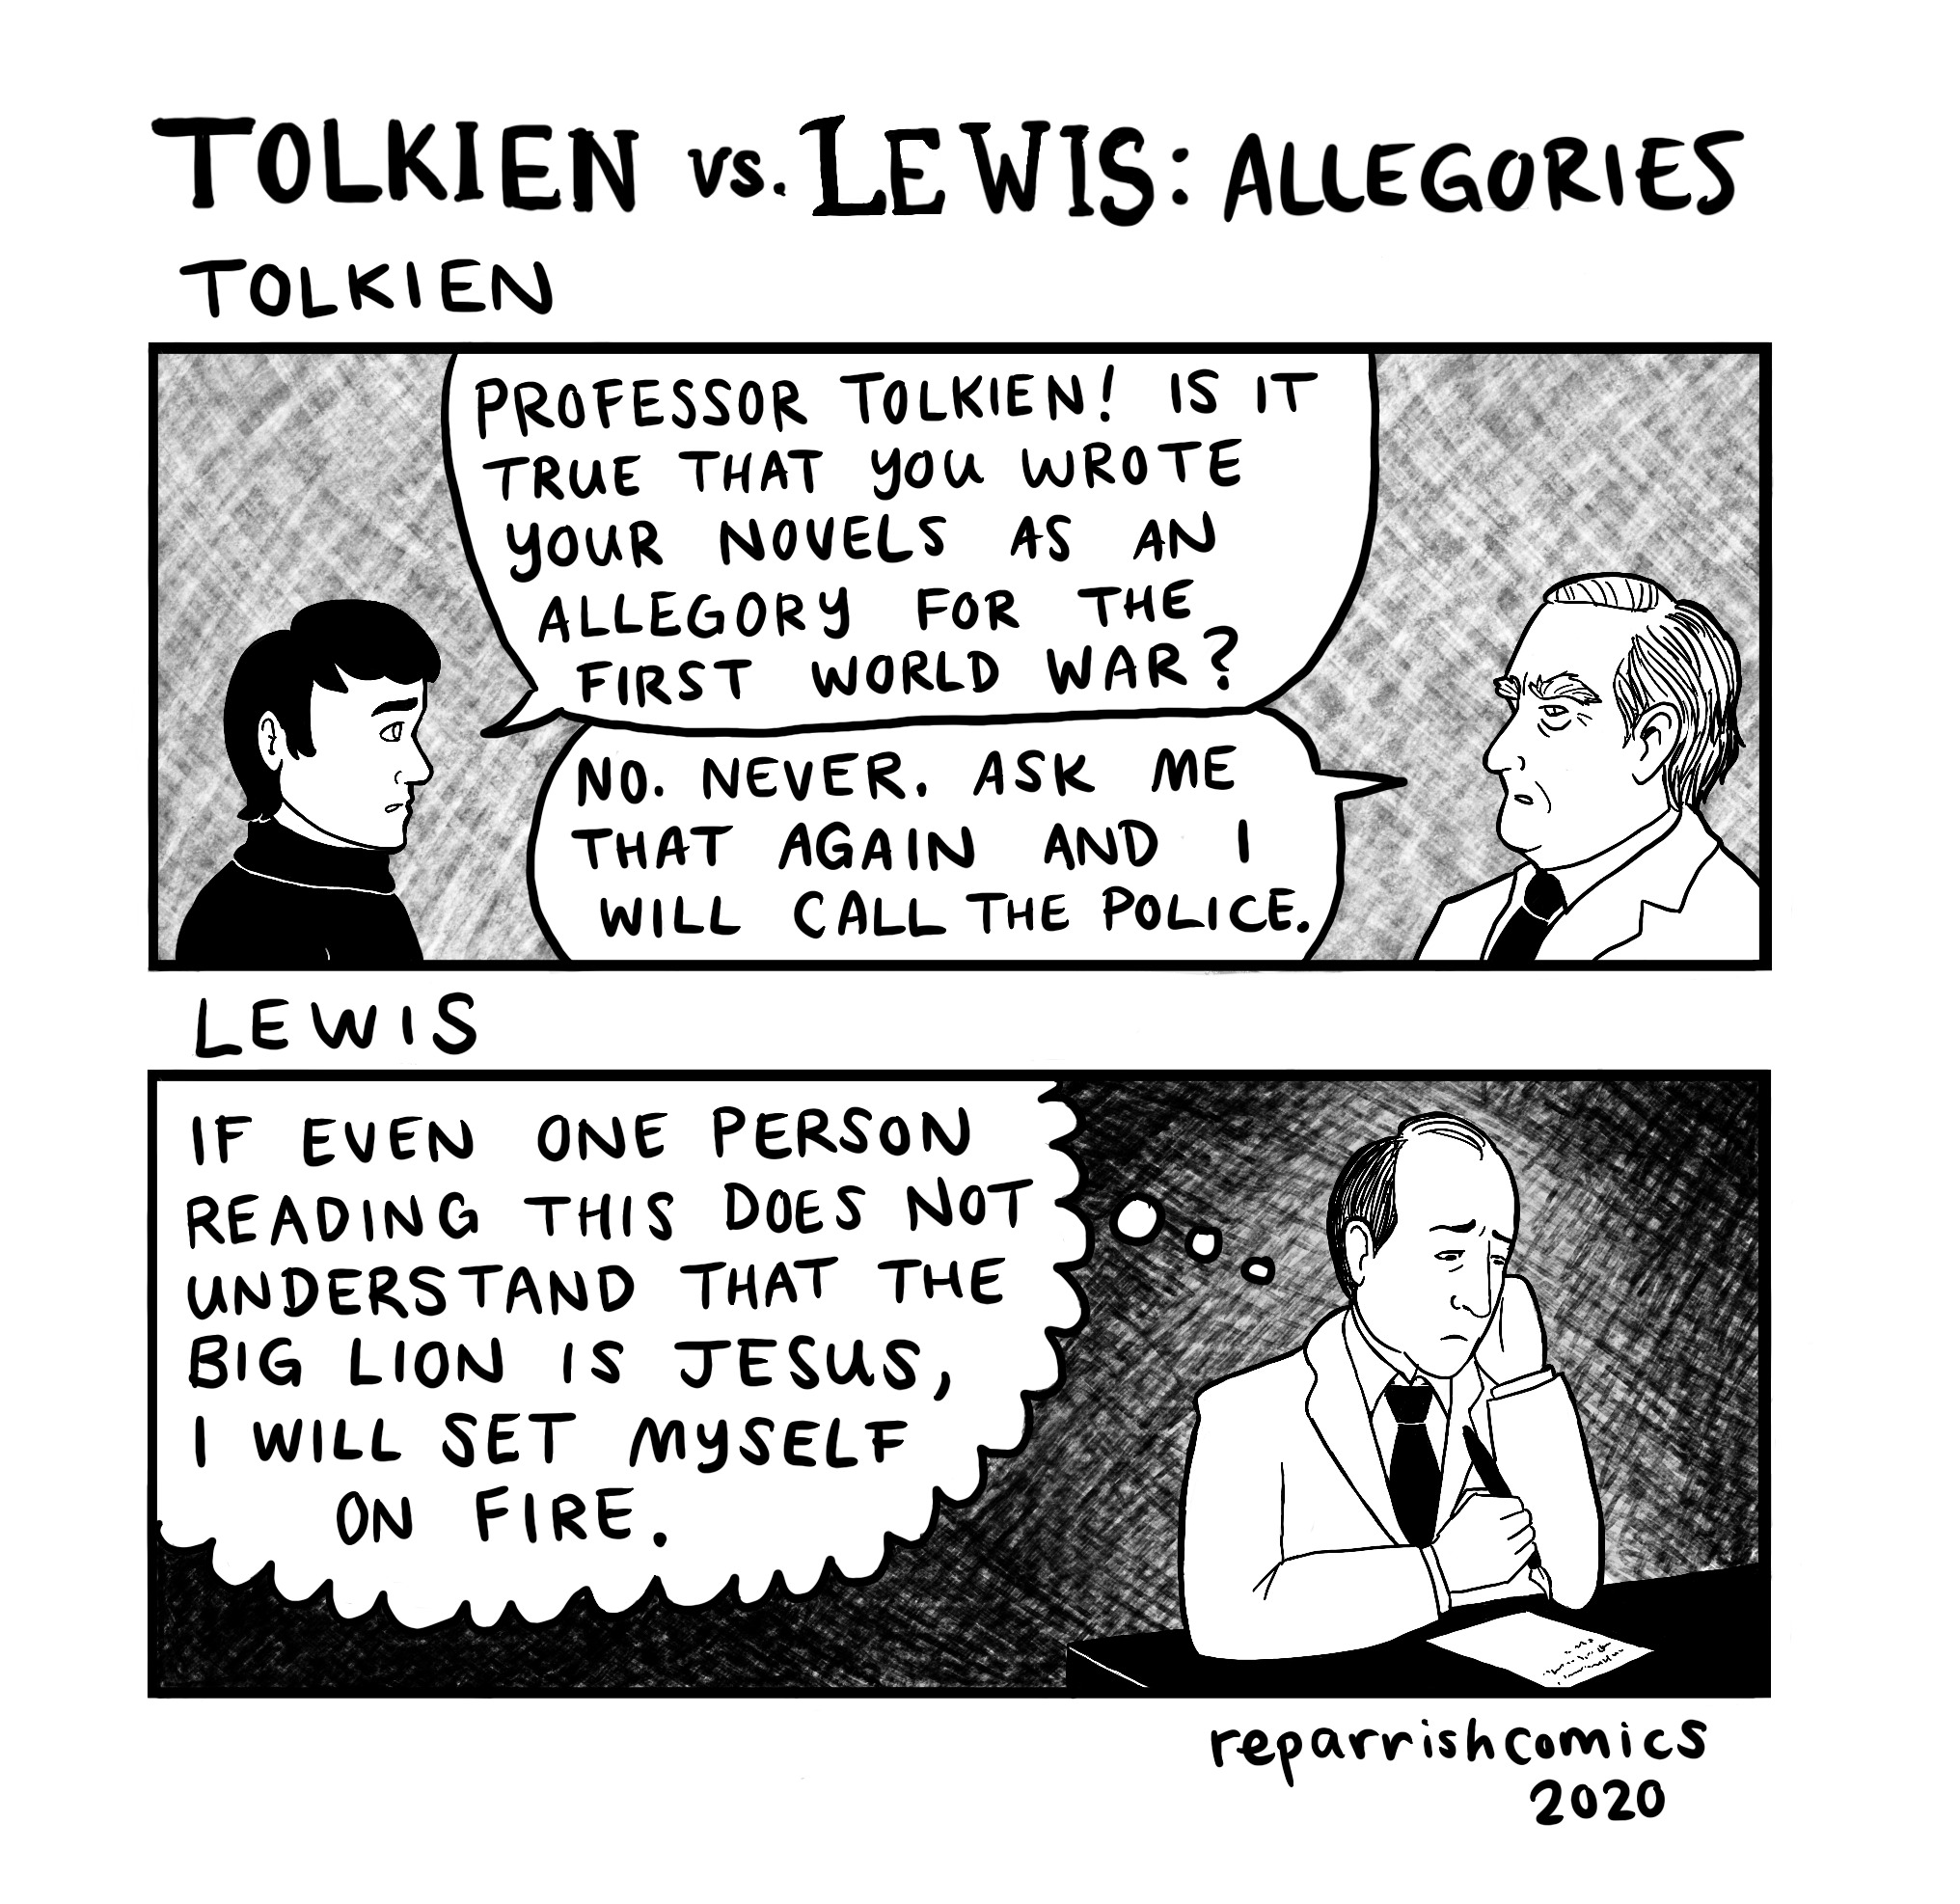 Viñeta cómica sobre la interpretación alegórica de las obras de Tolkien y Lewis